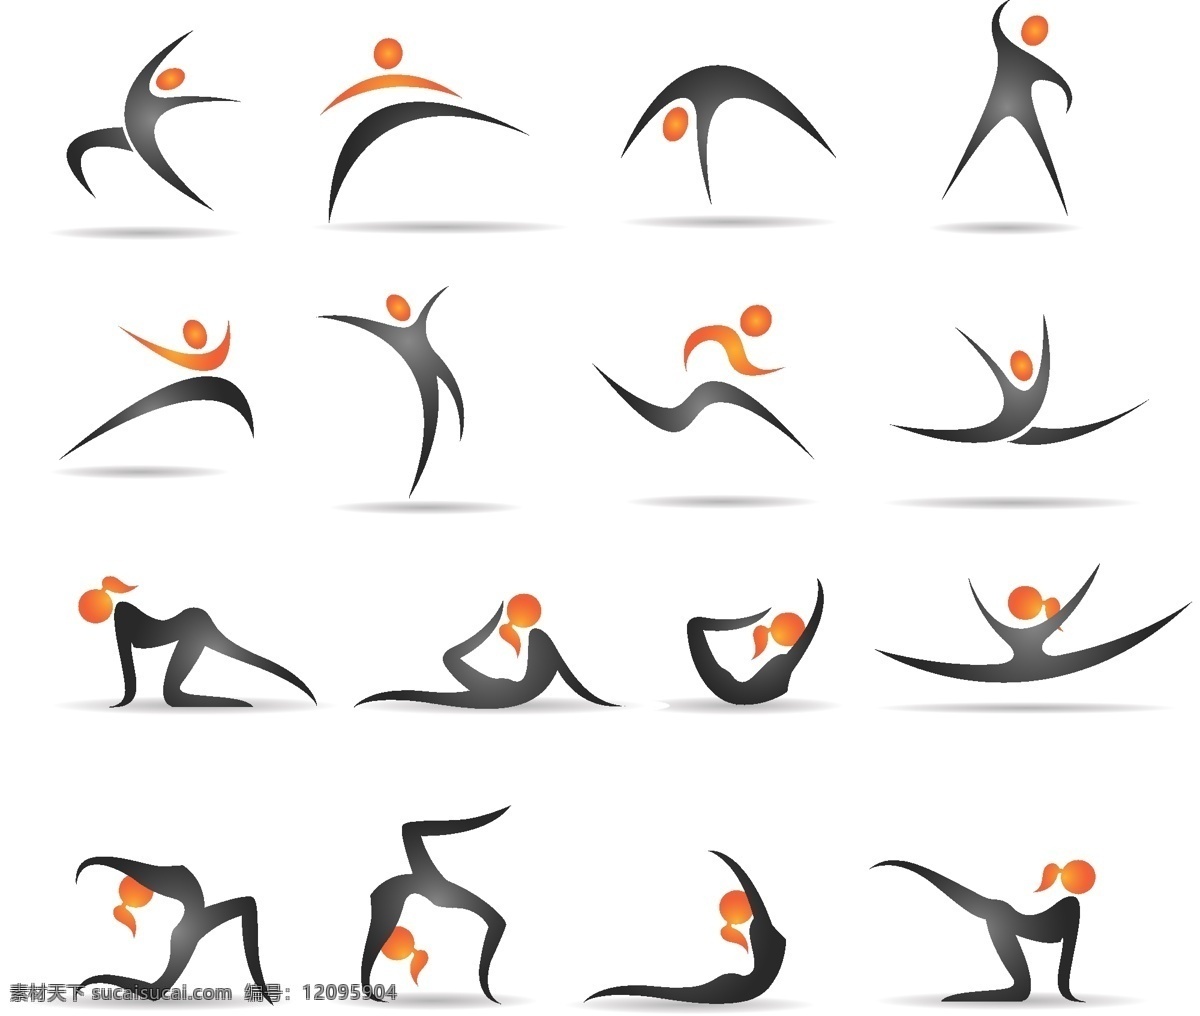 体操 动作 演示 步骤 剪影 体育 小人 瑜伽 造型 演示图 矢量图